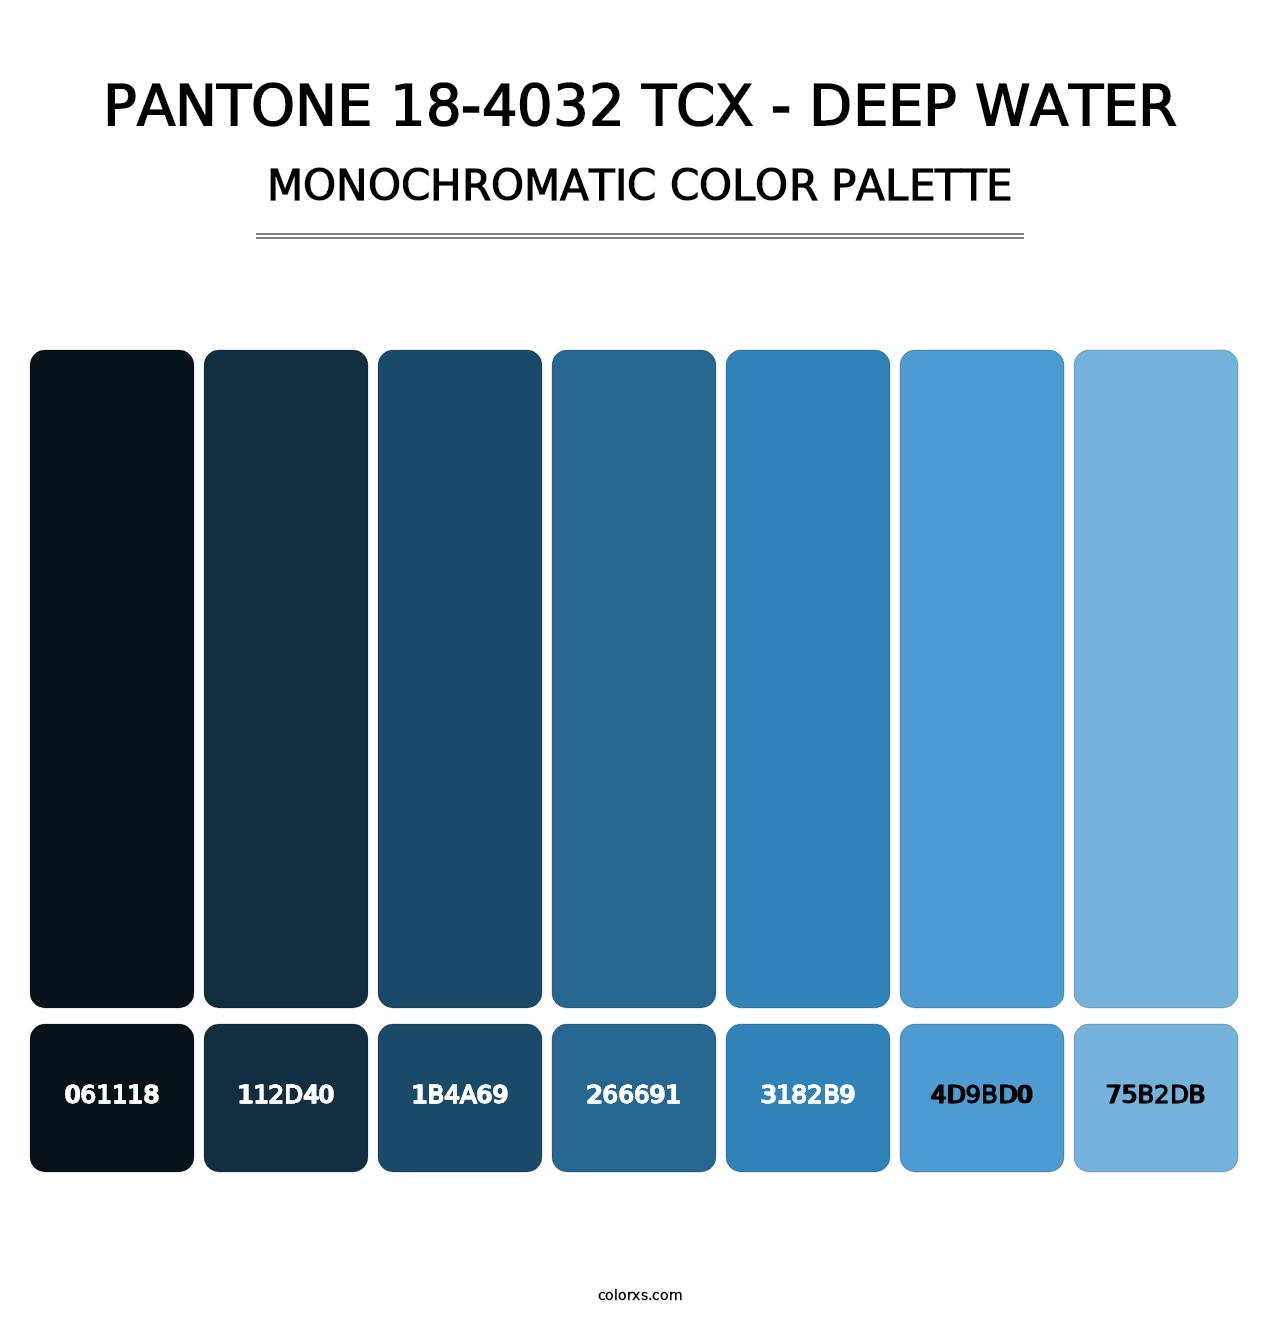 PANTONE 18-4032 TCX - Deep Water - Monochromatic Color Palette